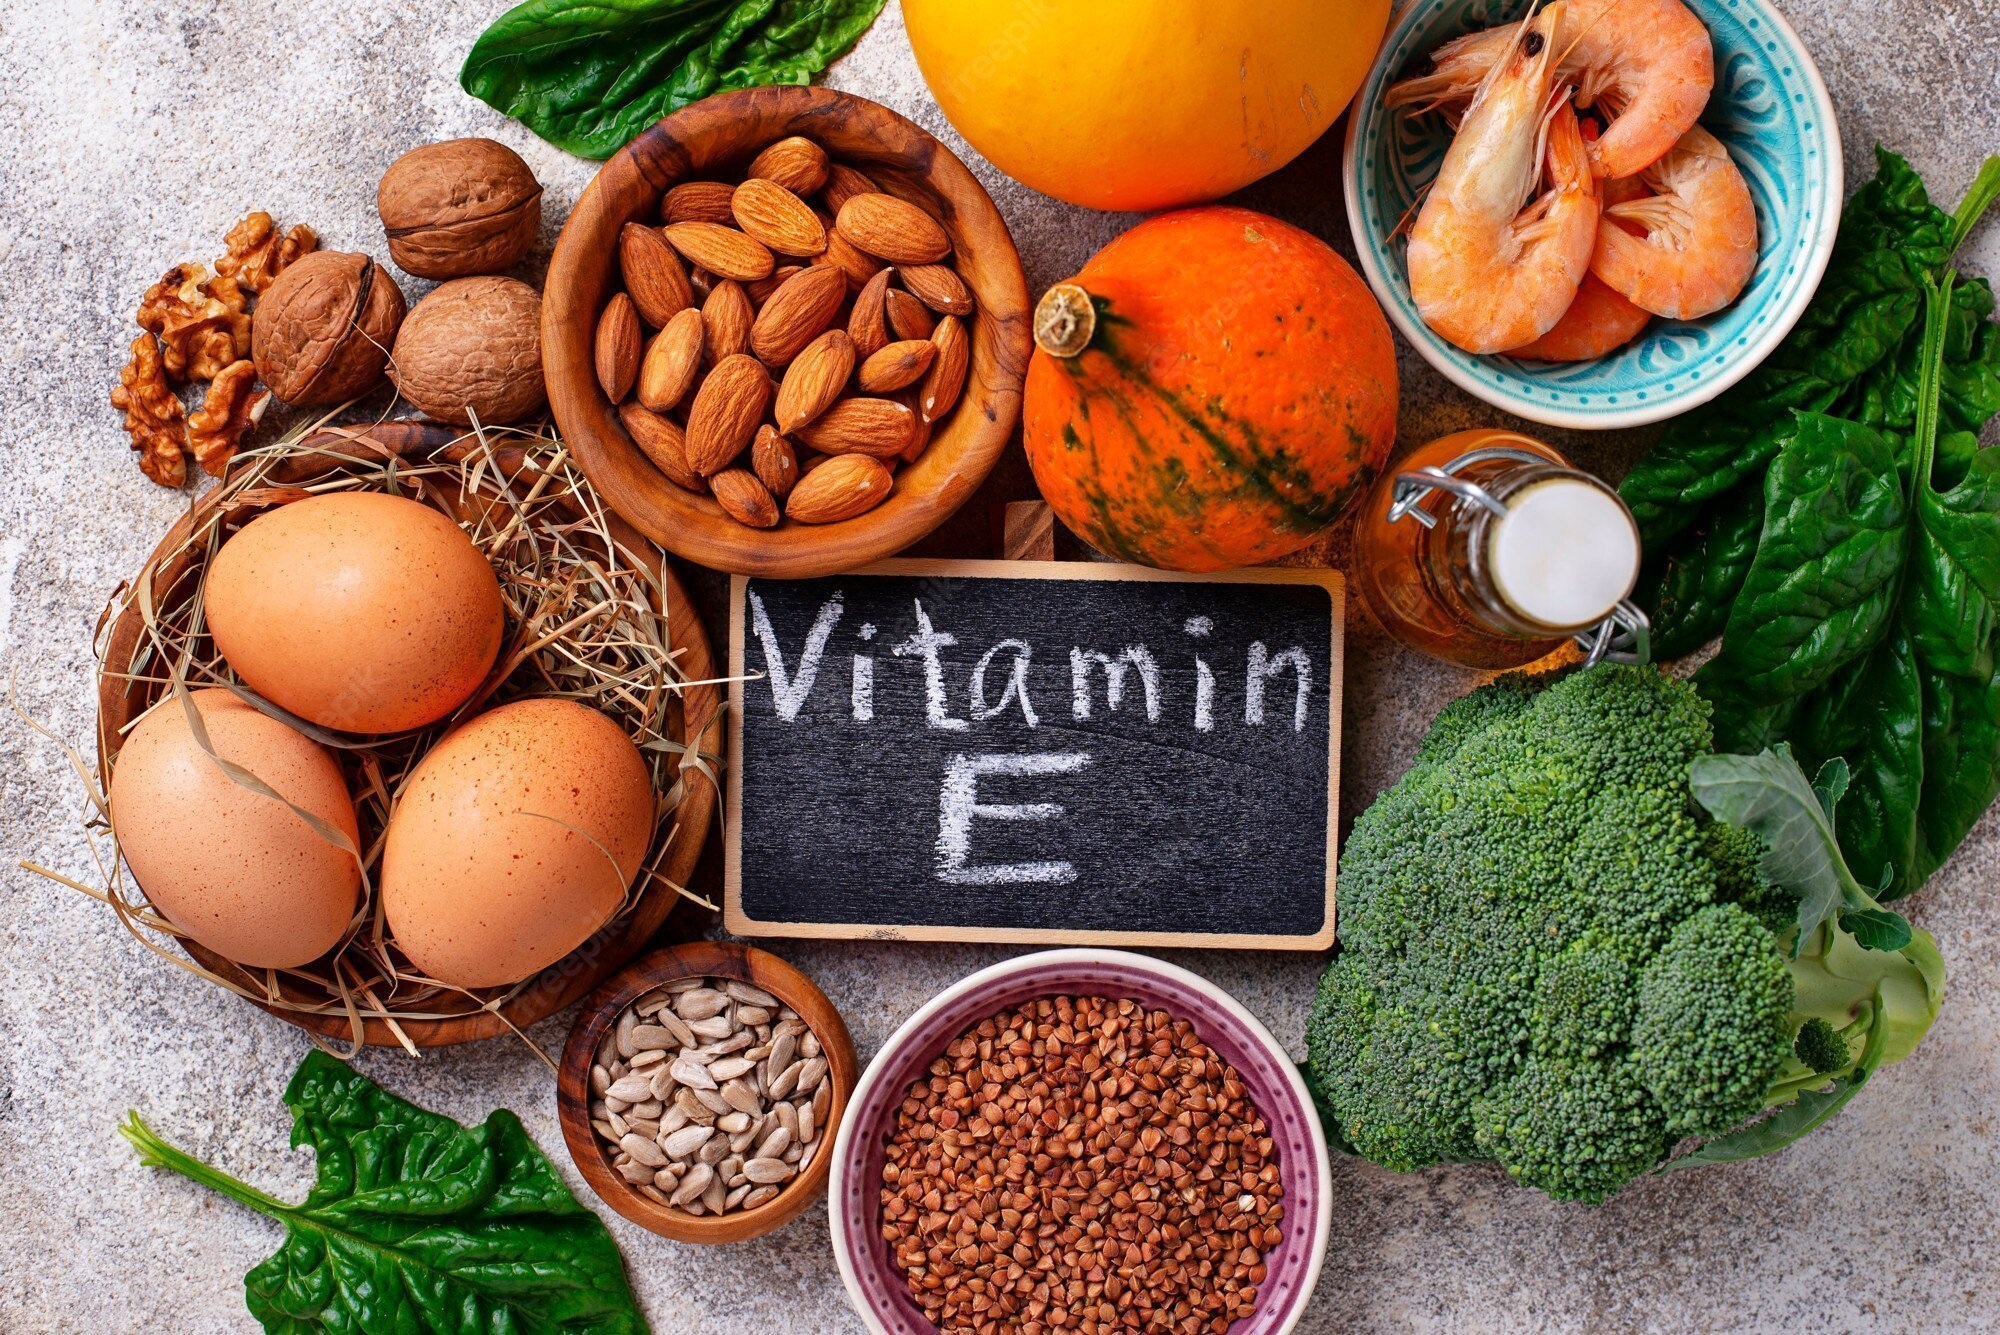 Tác dụng của Vitamin E